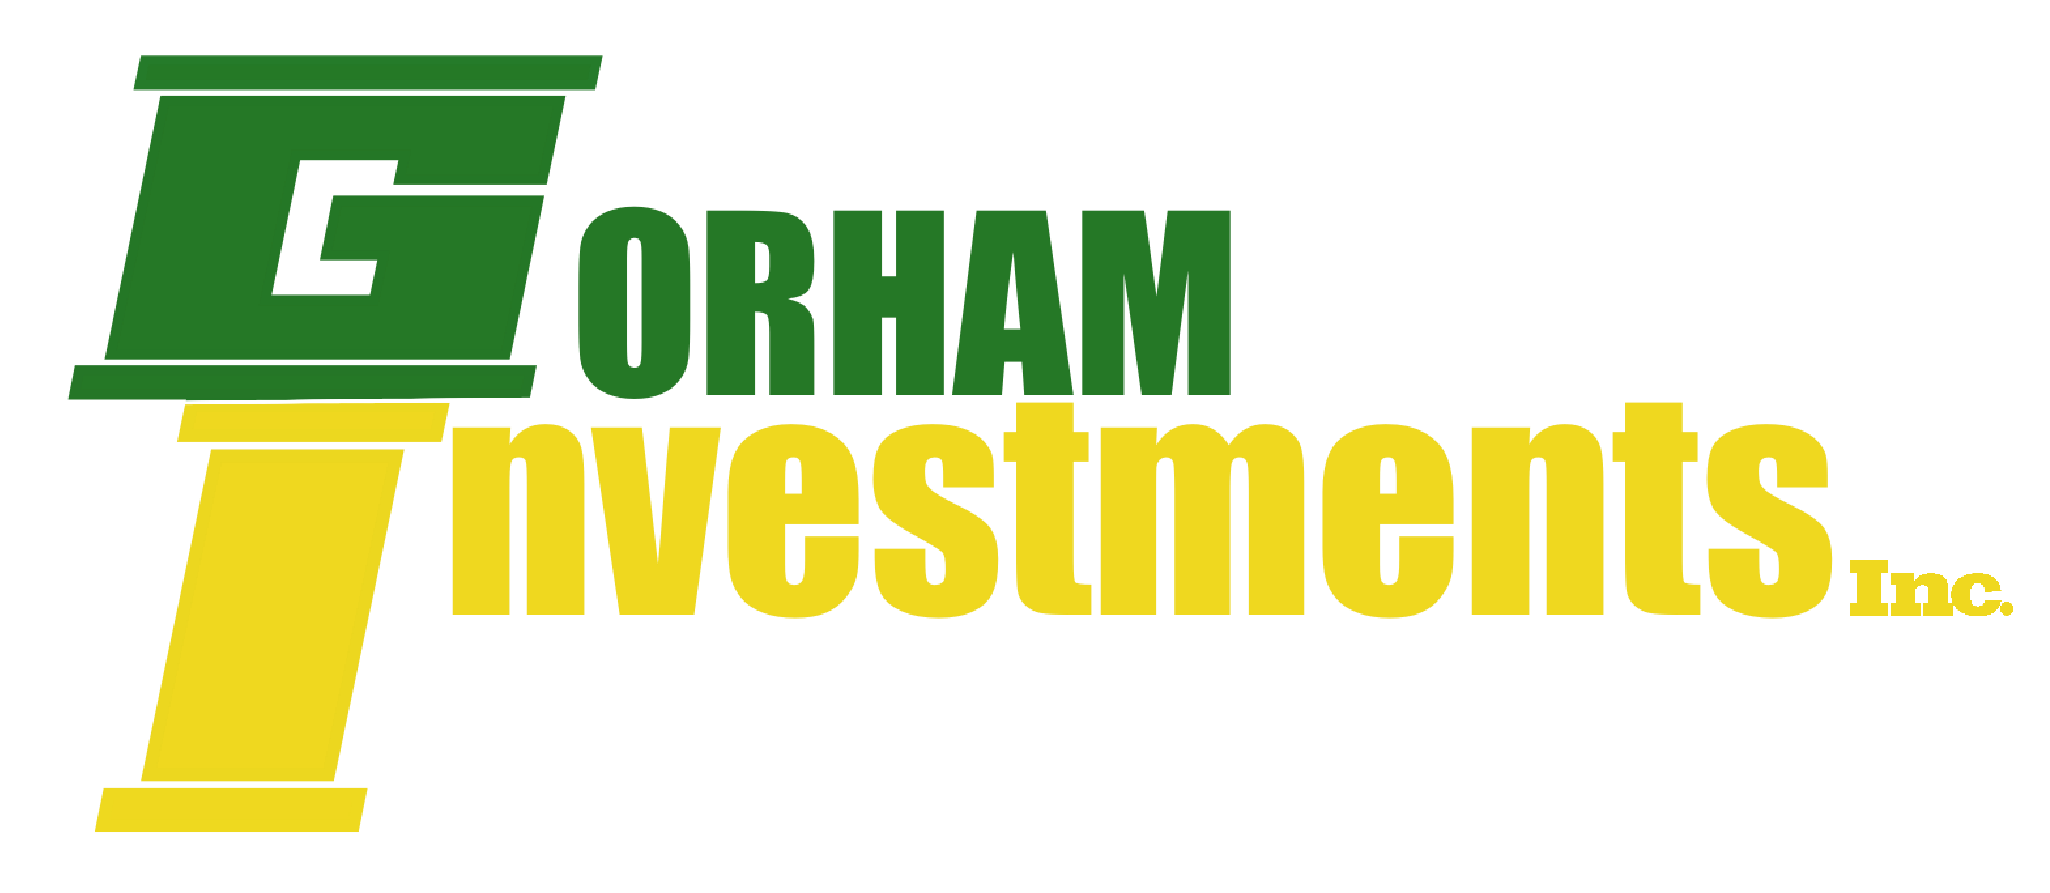 Gorham Investments Inc